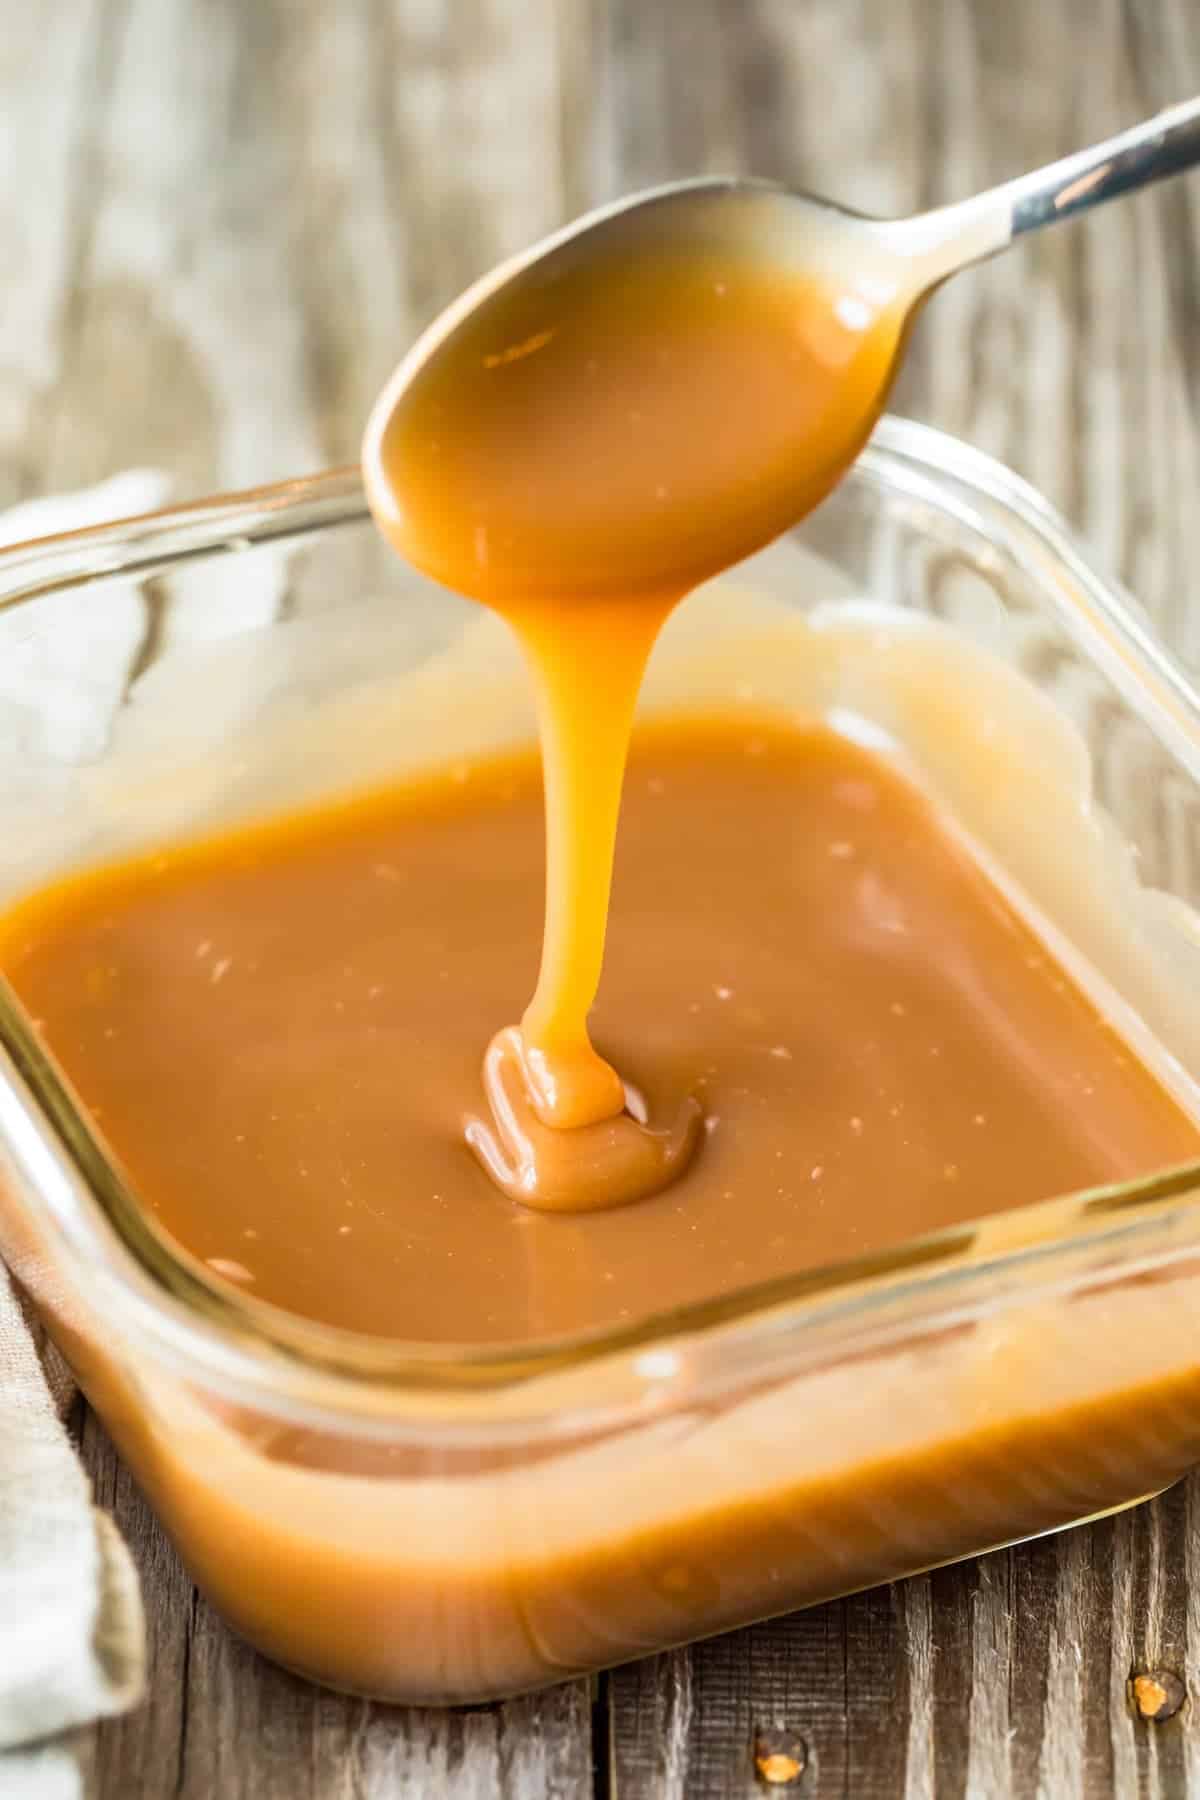 How to Make Caramel Sauce